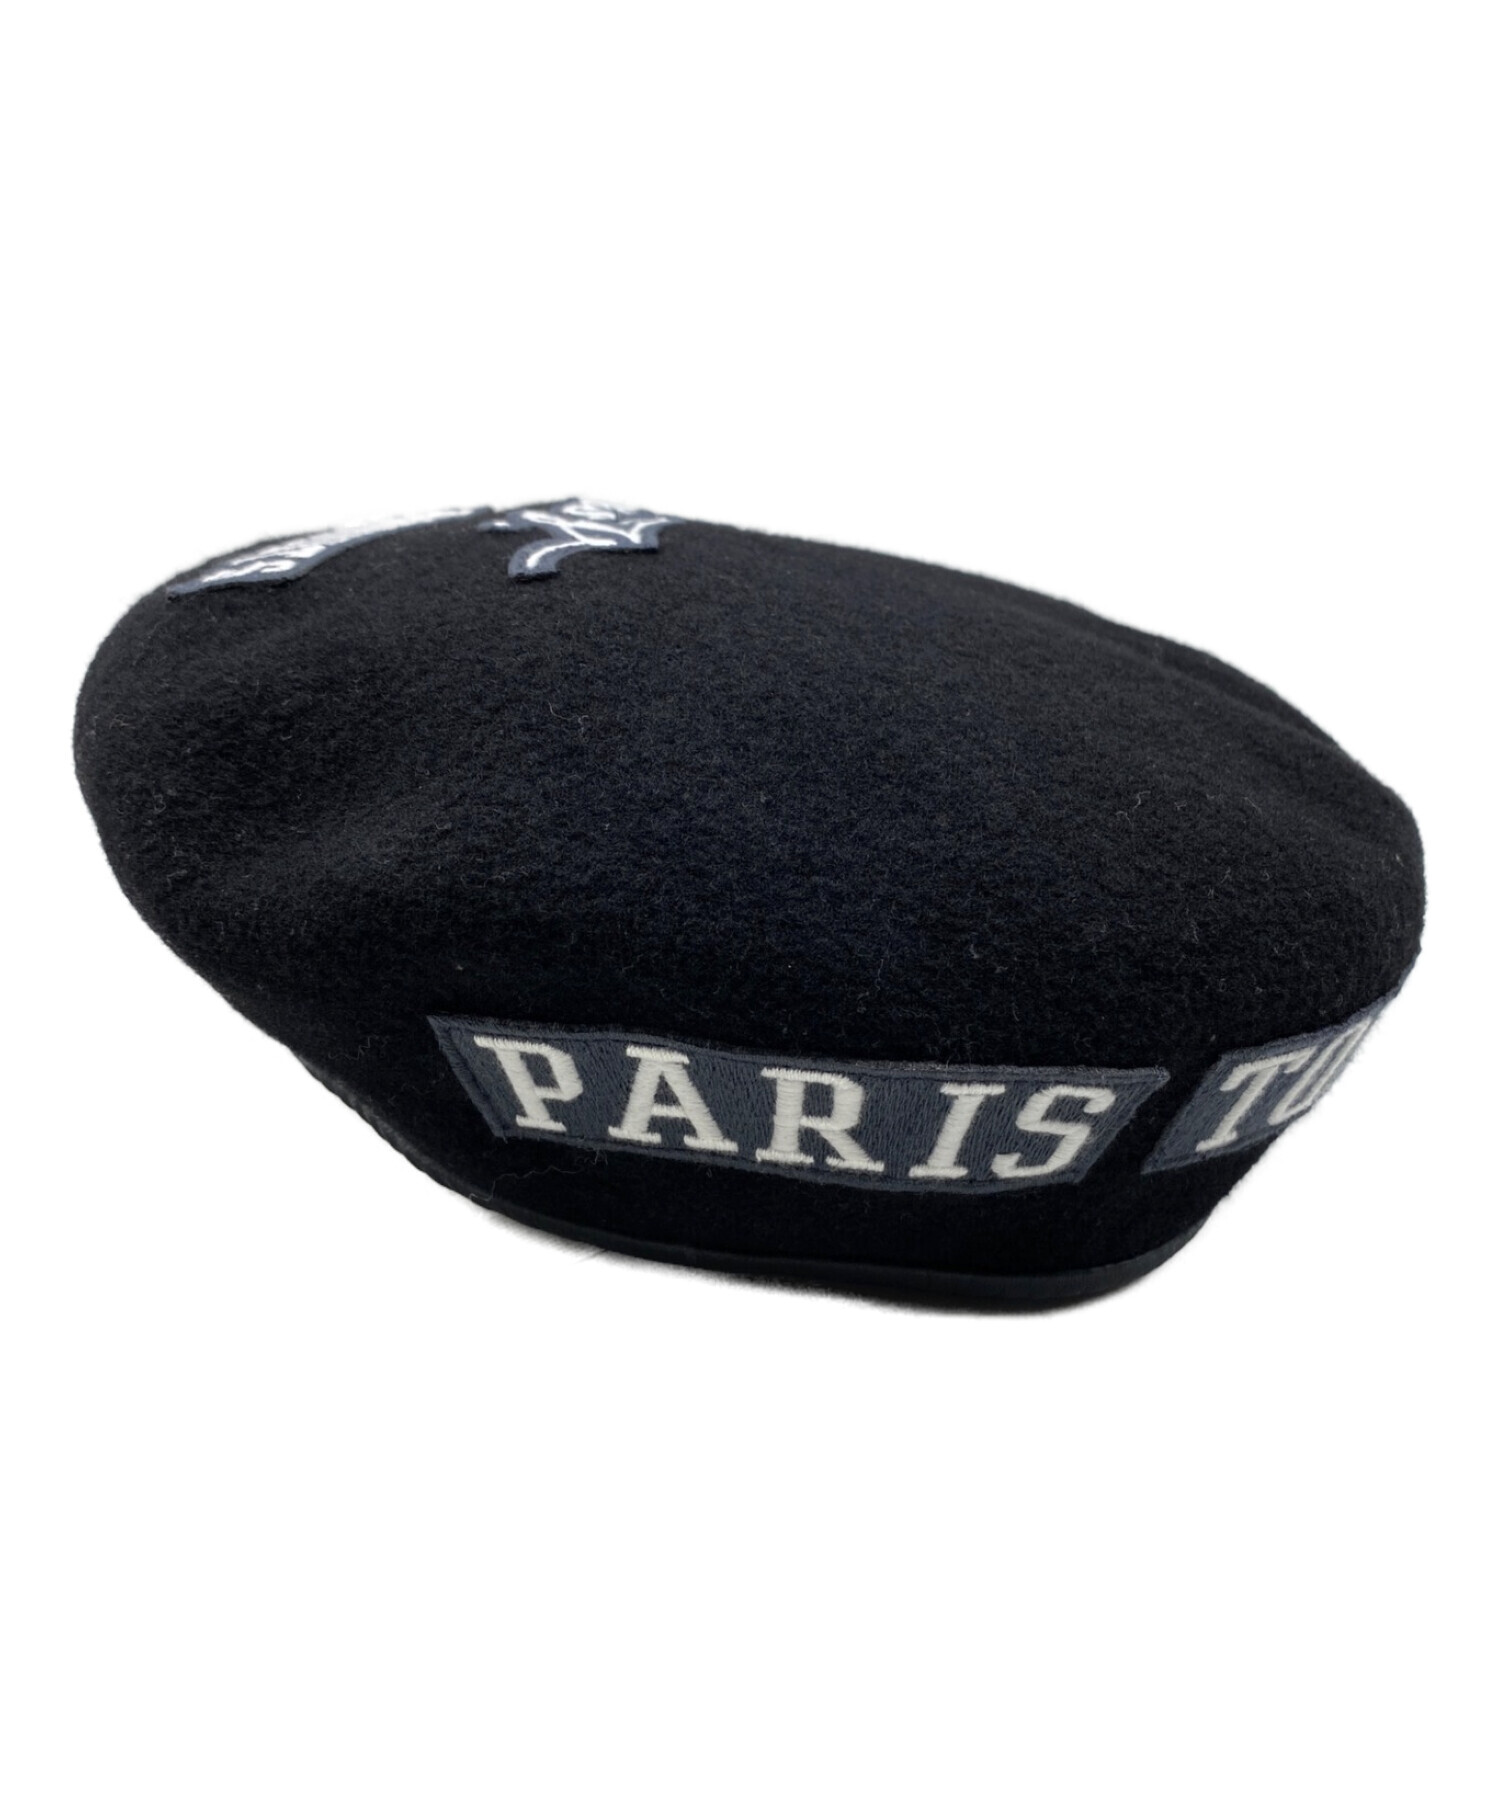 LOUIS VUITTON (ルイ ヴィトン) FRAGMENT DESIGN (フラグメント デザイン) パリストーキョーワッペンベレー帽 ブラック  サイズ:-